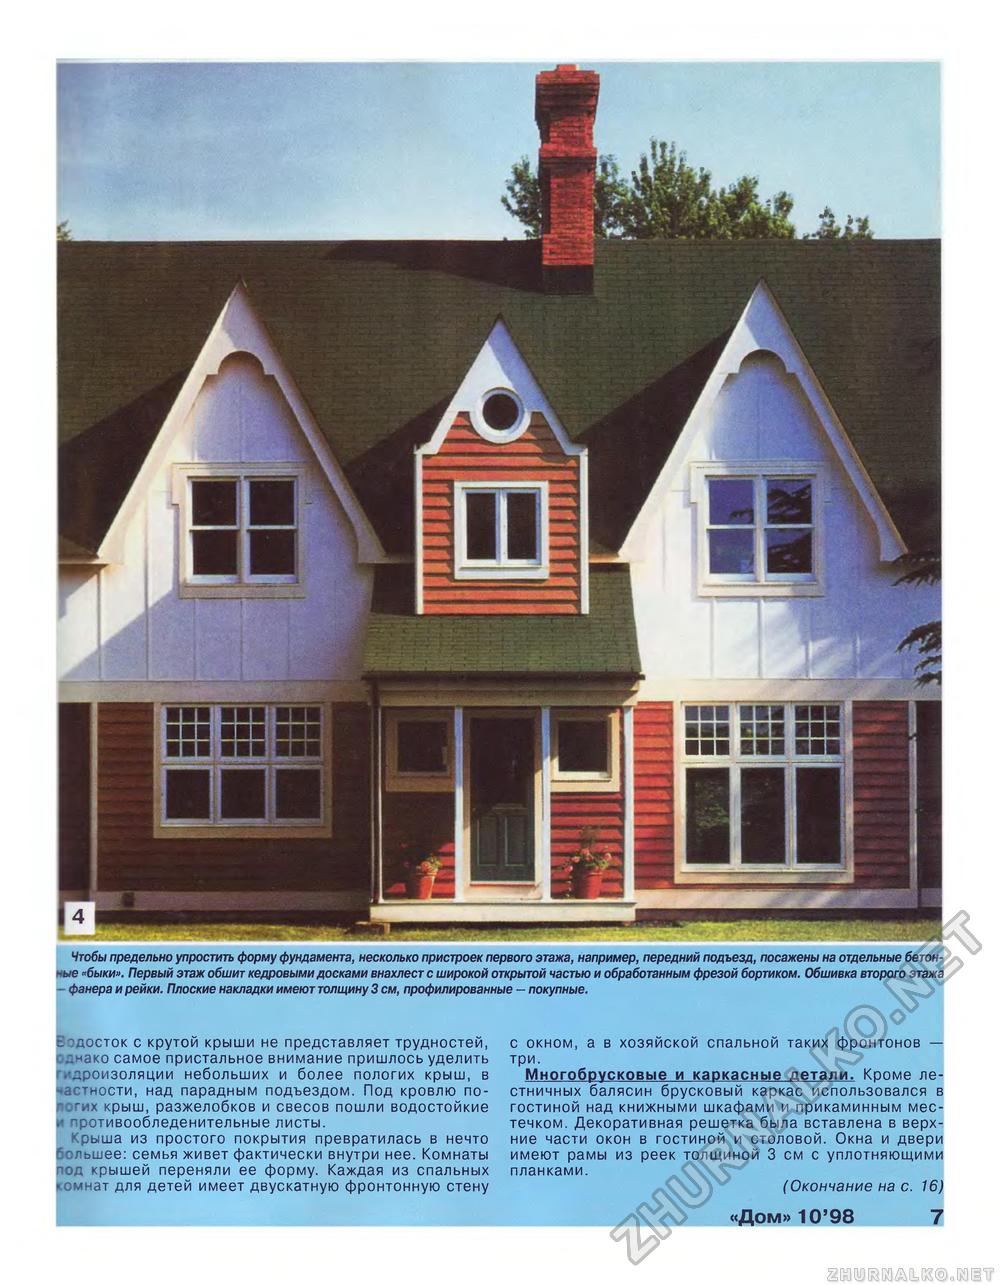 Дом 1998-10, страница 7